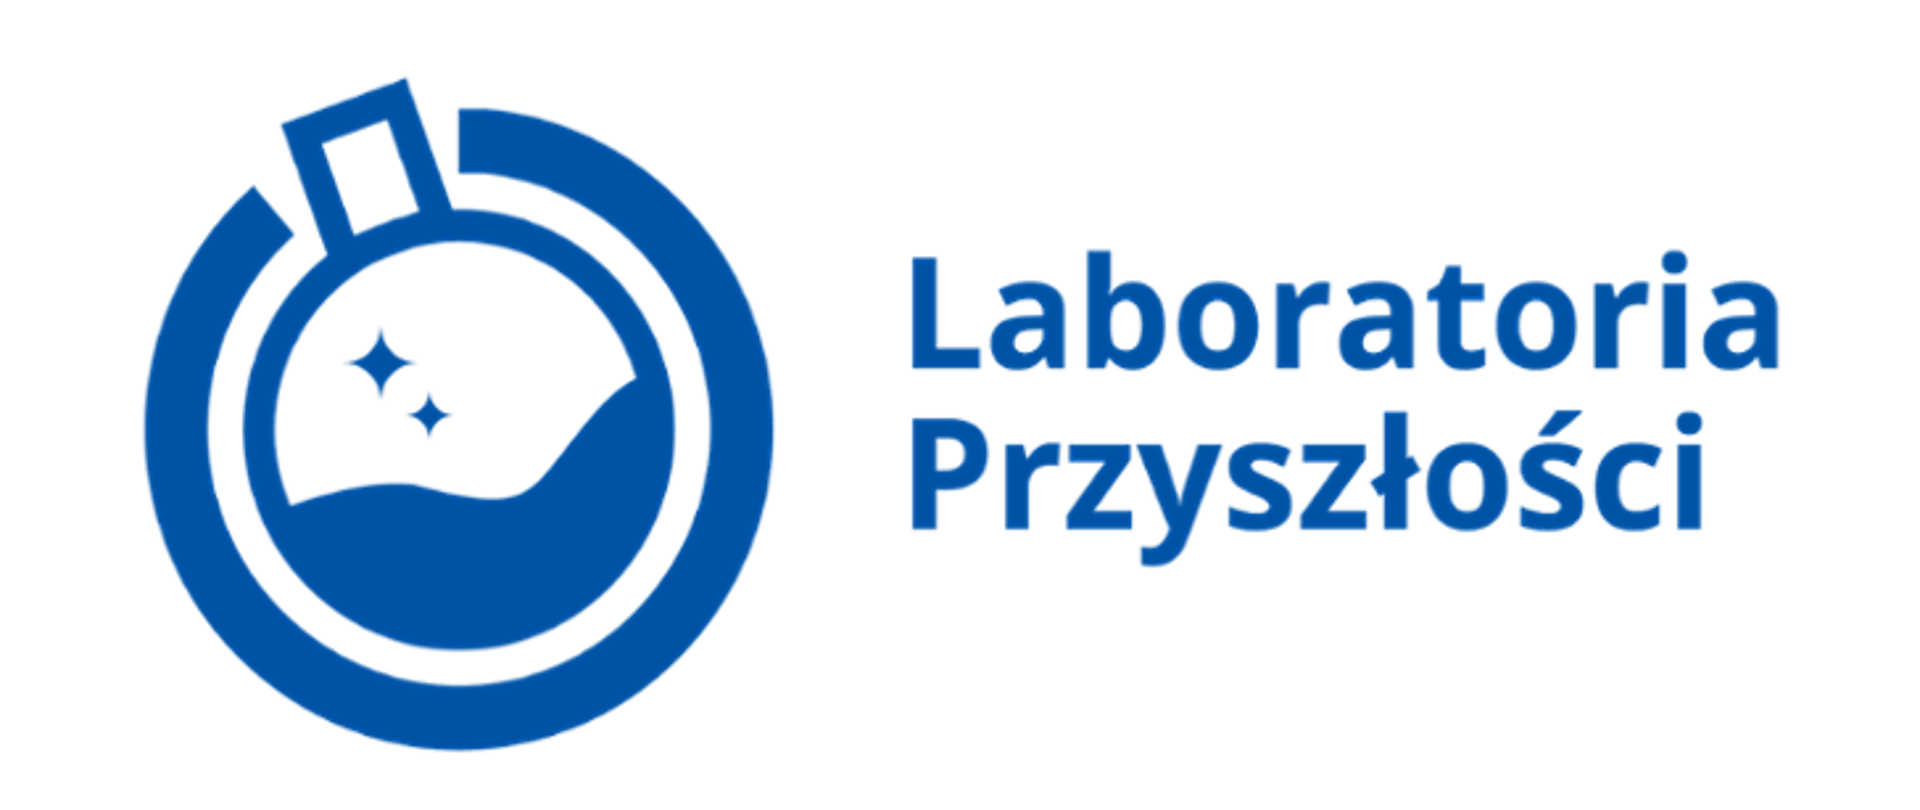 Logotyp programu Laboratoria Przyszłości w kolorze niebieskim , kształtem przypomina kolbę chemiczną 